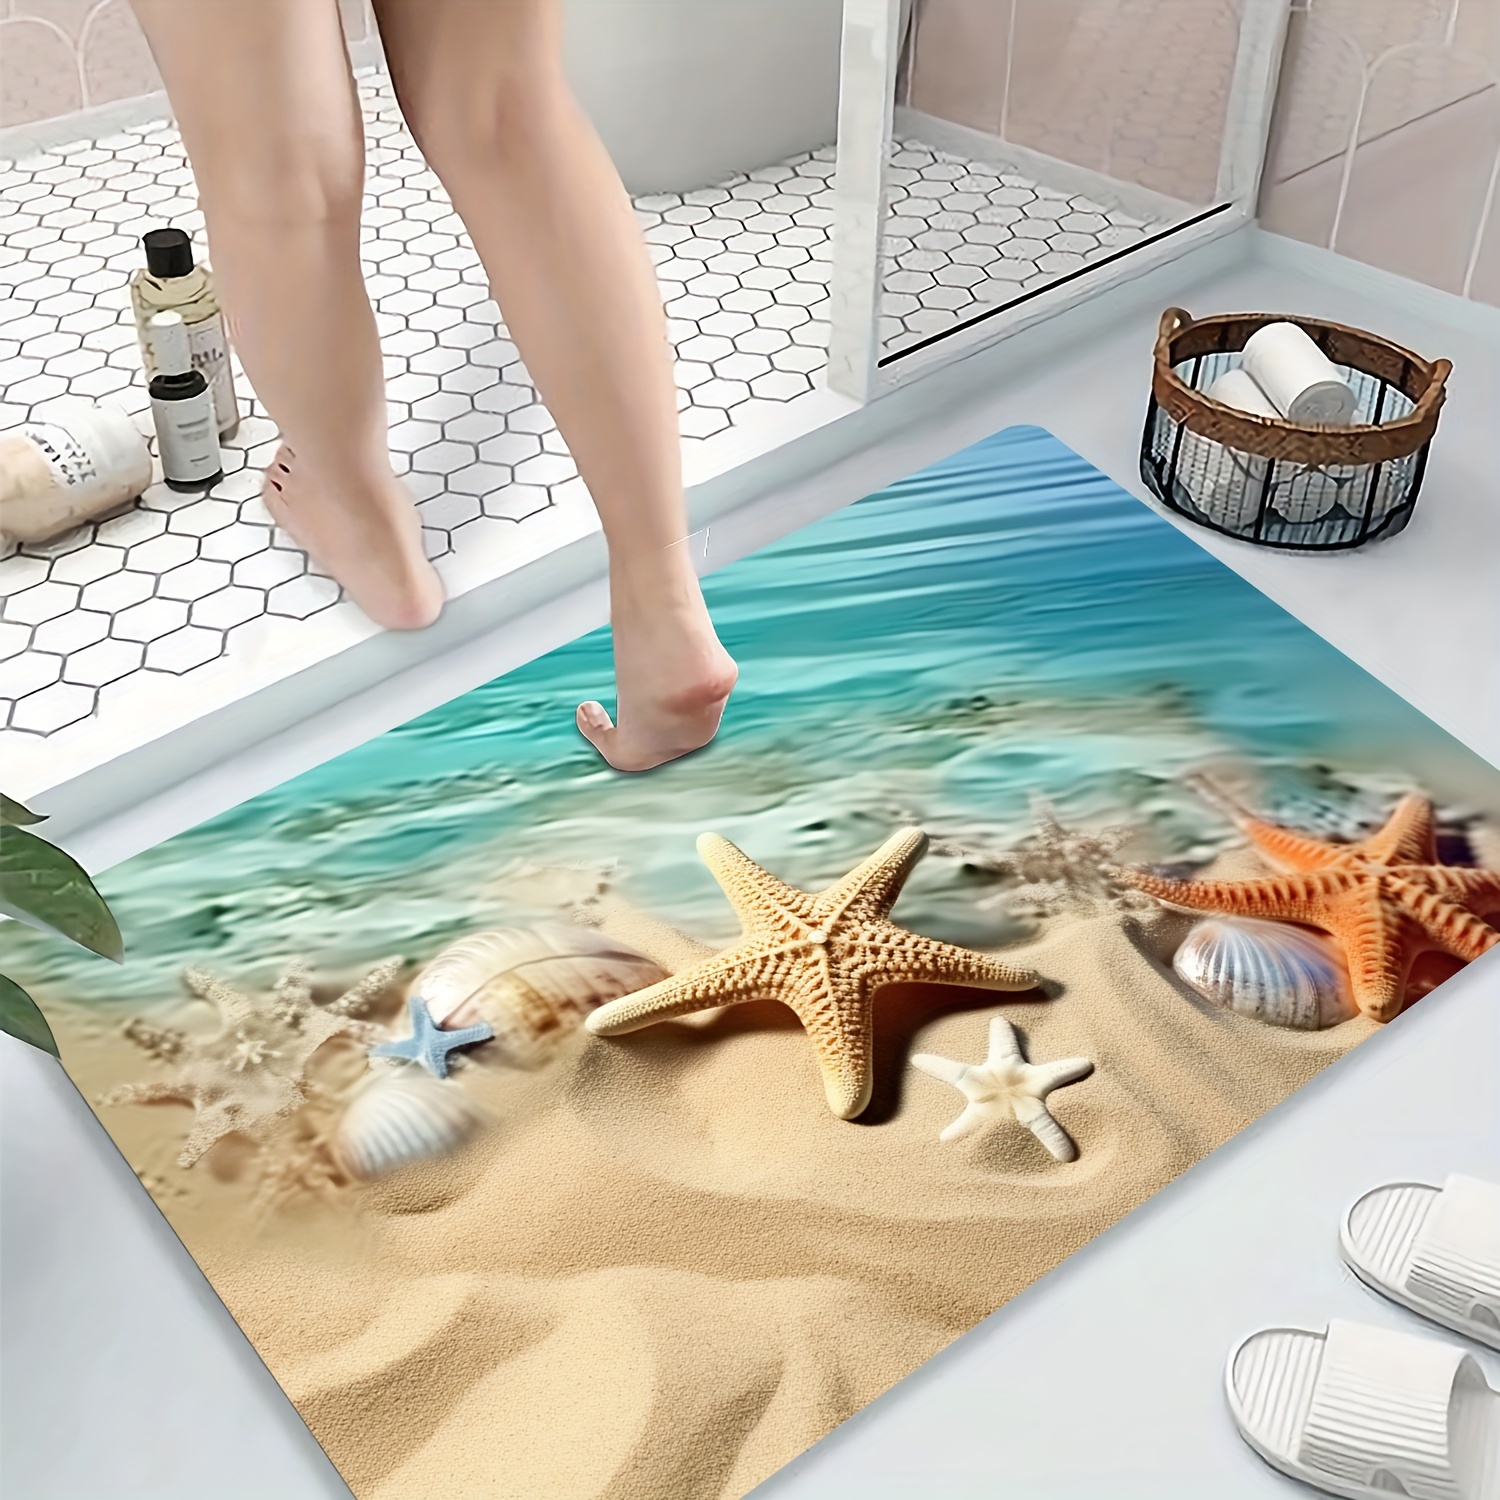 Nautical Anti-slip Bath Mat for Modern Home Decor and Bathroom